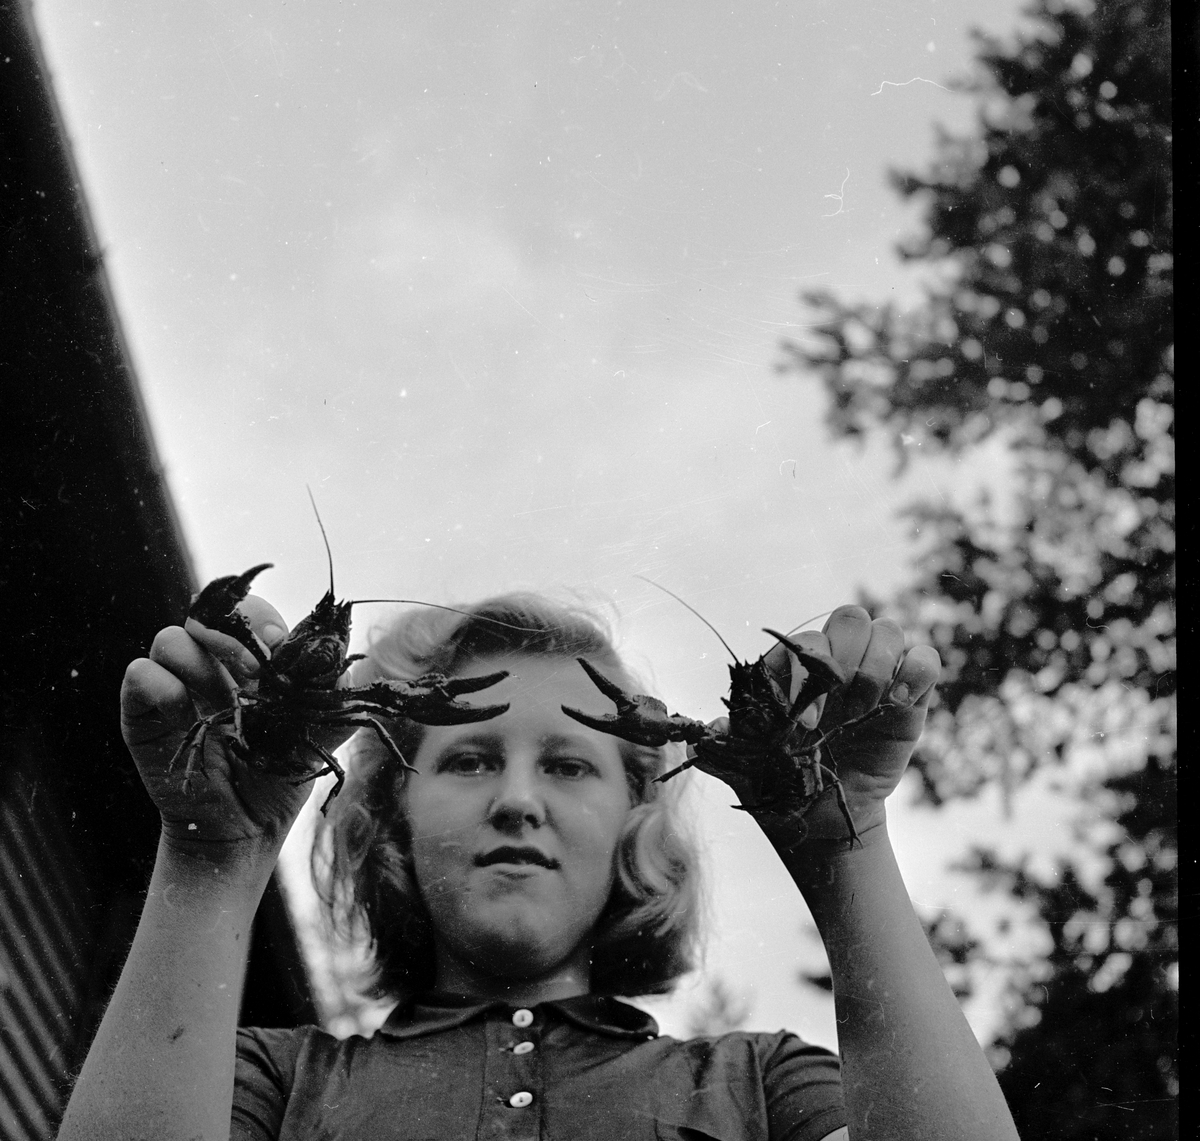 Pike som viser frem to kreps.
Fotografert 1954.